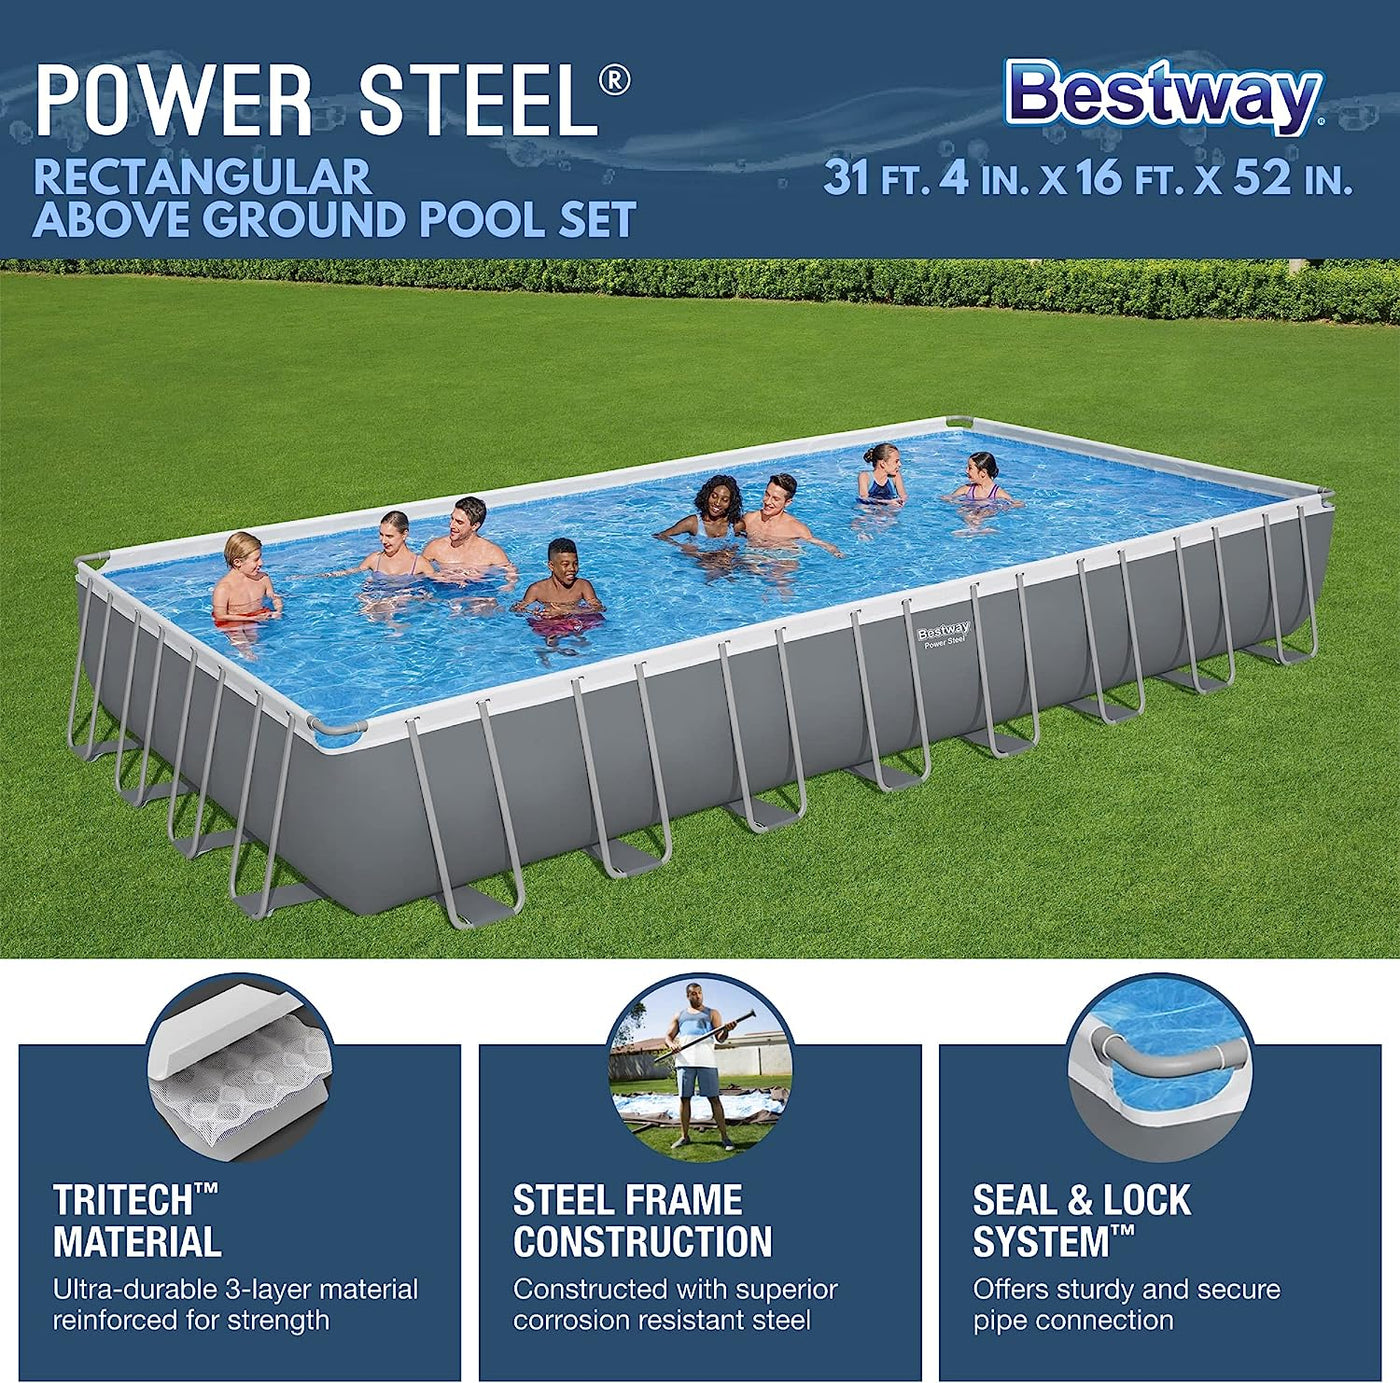 Bestway Power Steel 31' 4" x 16' x 52" Metal Frame Above Ground Pool - $1,110